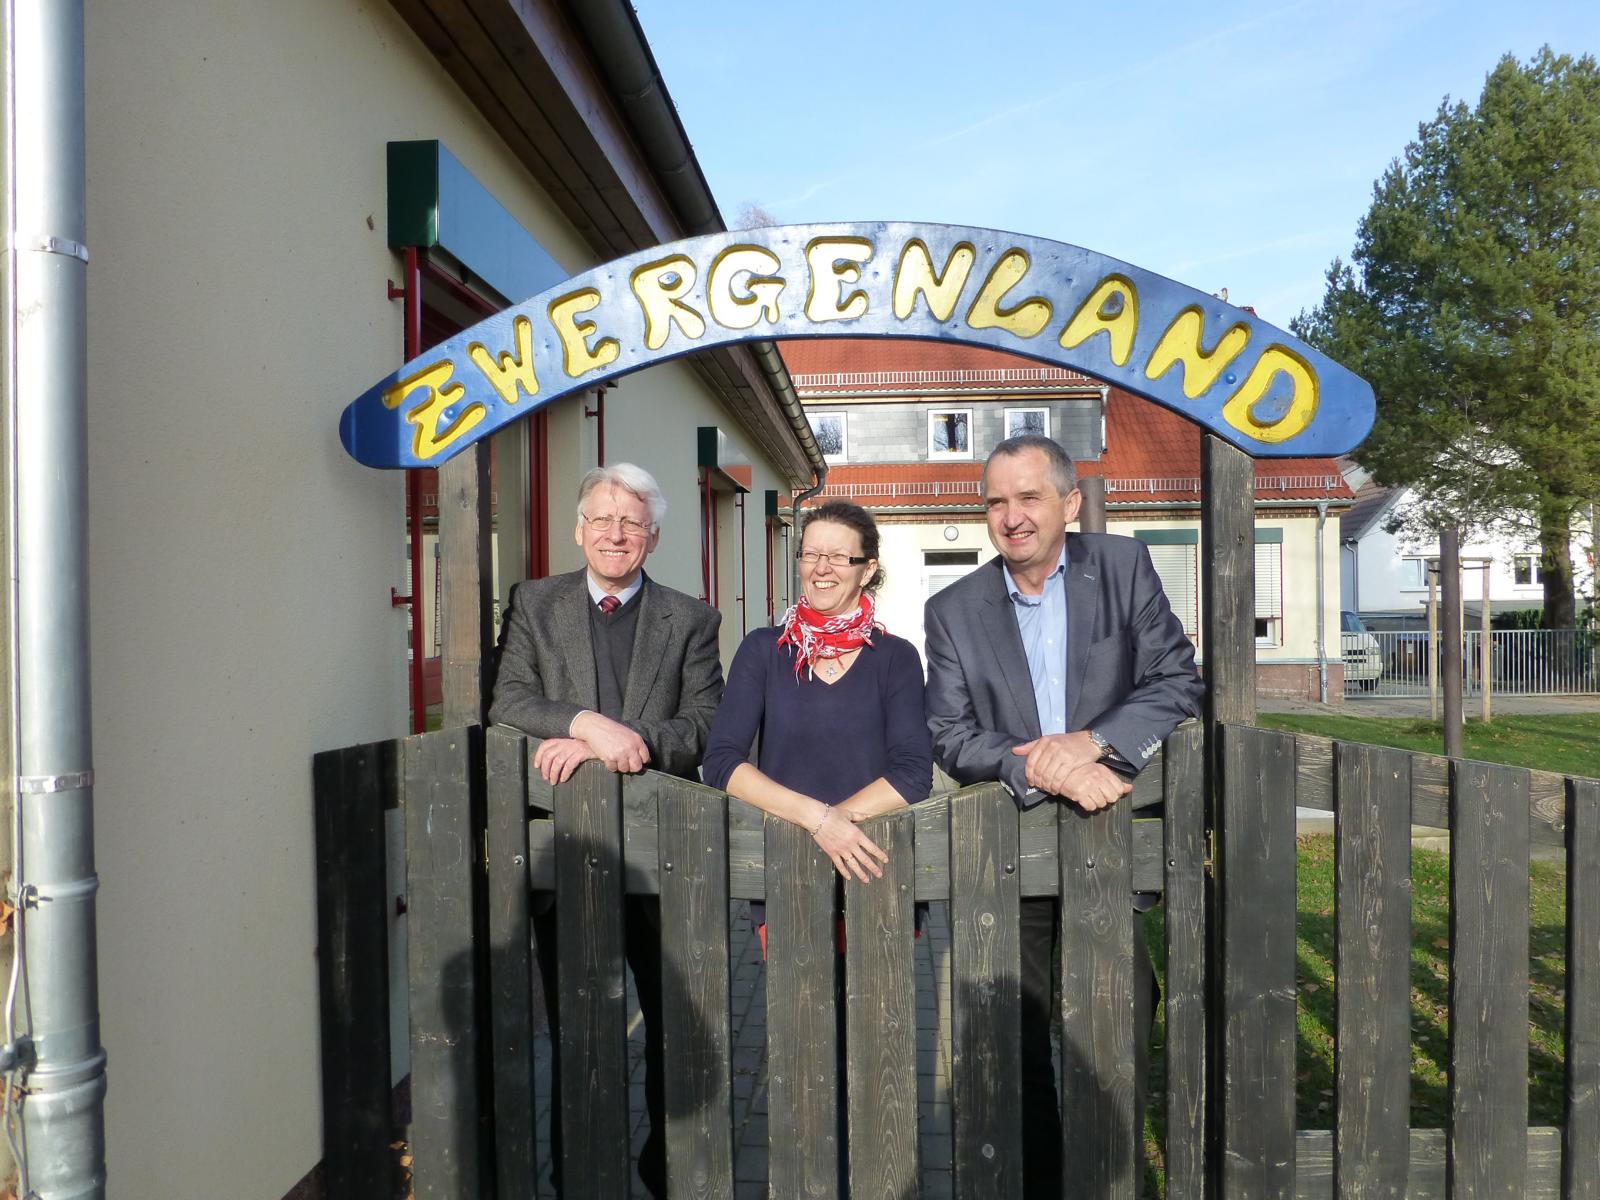 Penigs Bürgermeister Thomas Eulenberger, die Leiterin der Kita "Zwergenland" Kerstin Stahl und Thomas Schmidt MdL